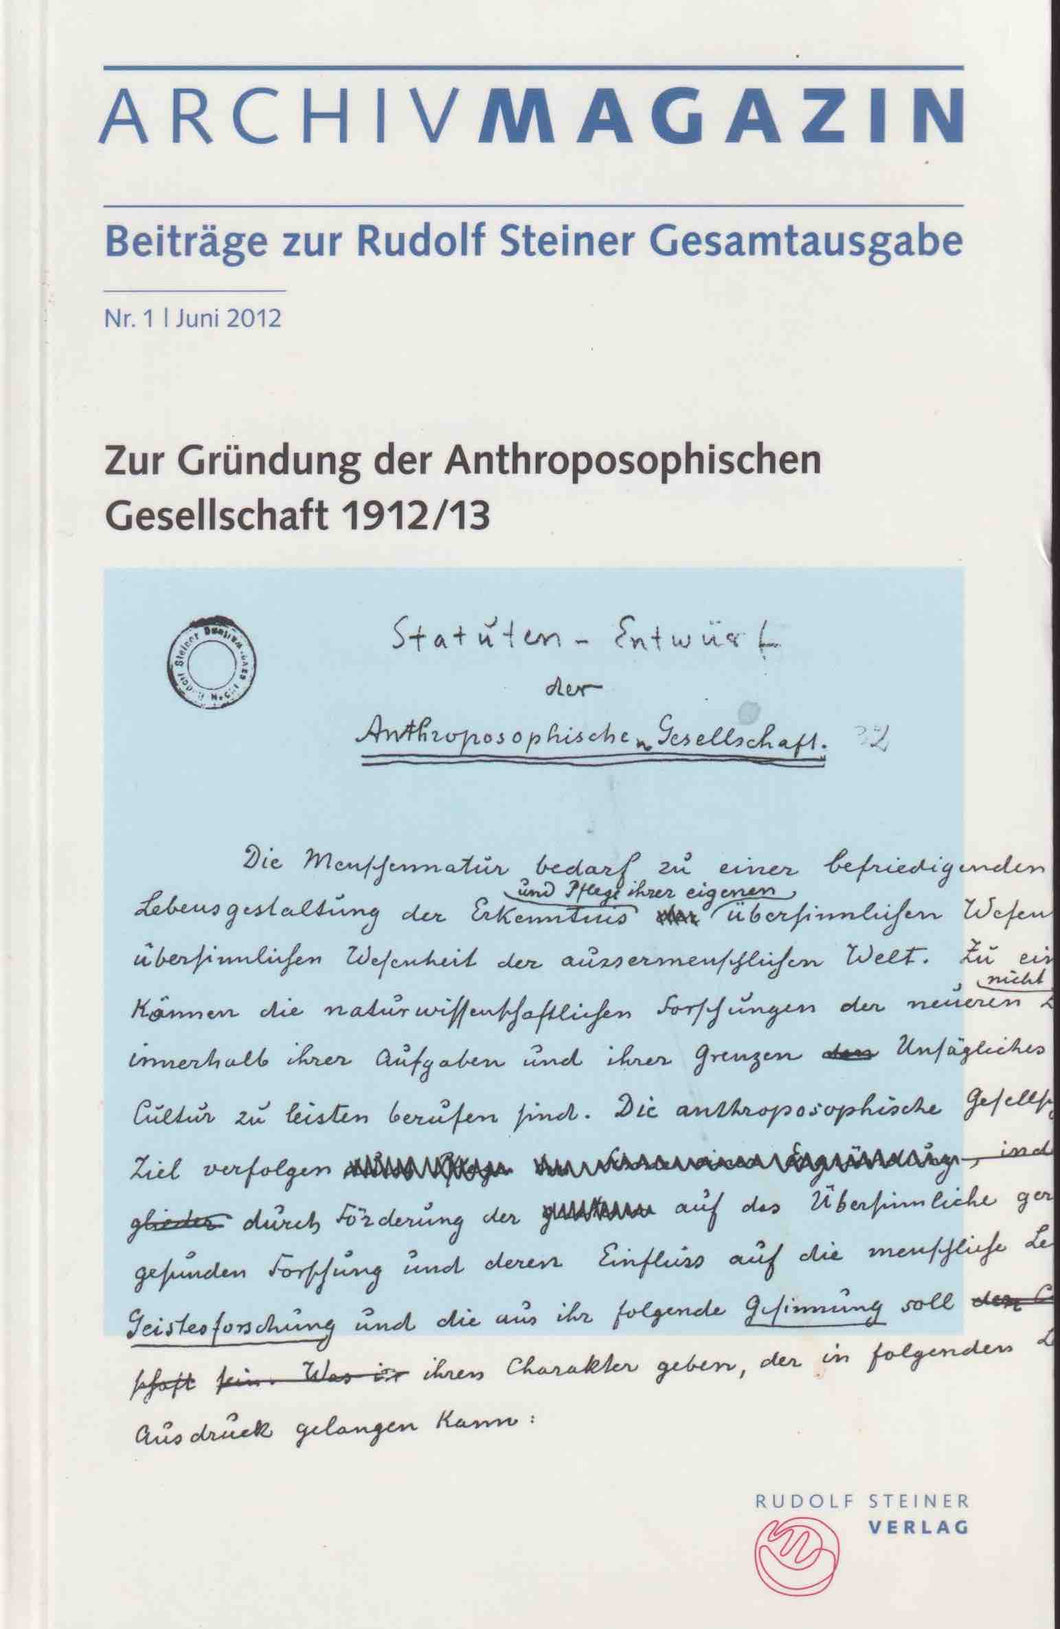 Zur Gründung der Anthroposophischen Gesellschaft 1912/13